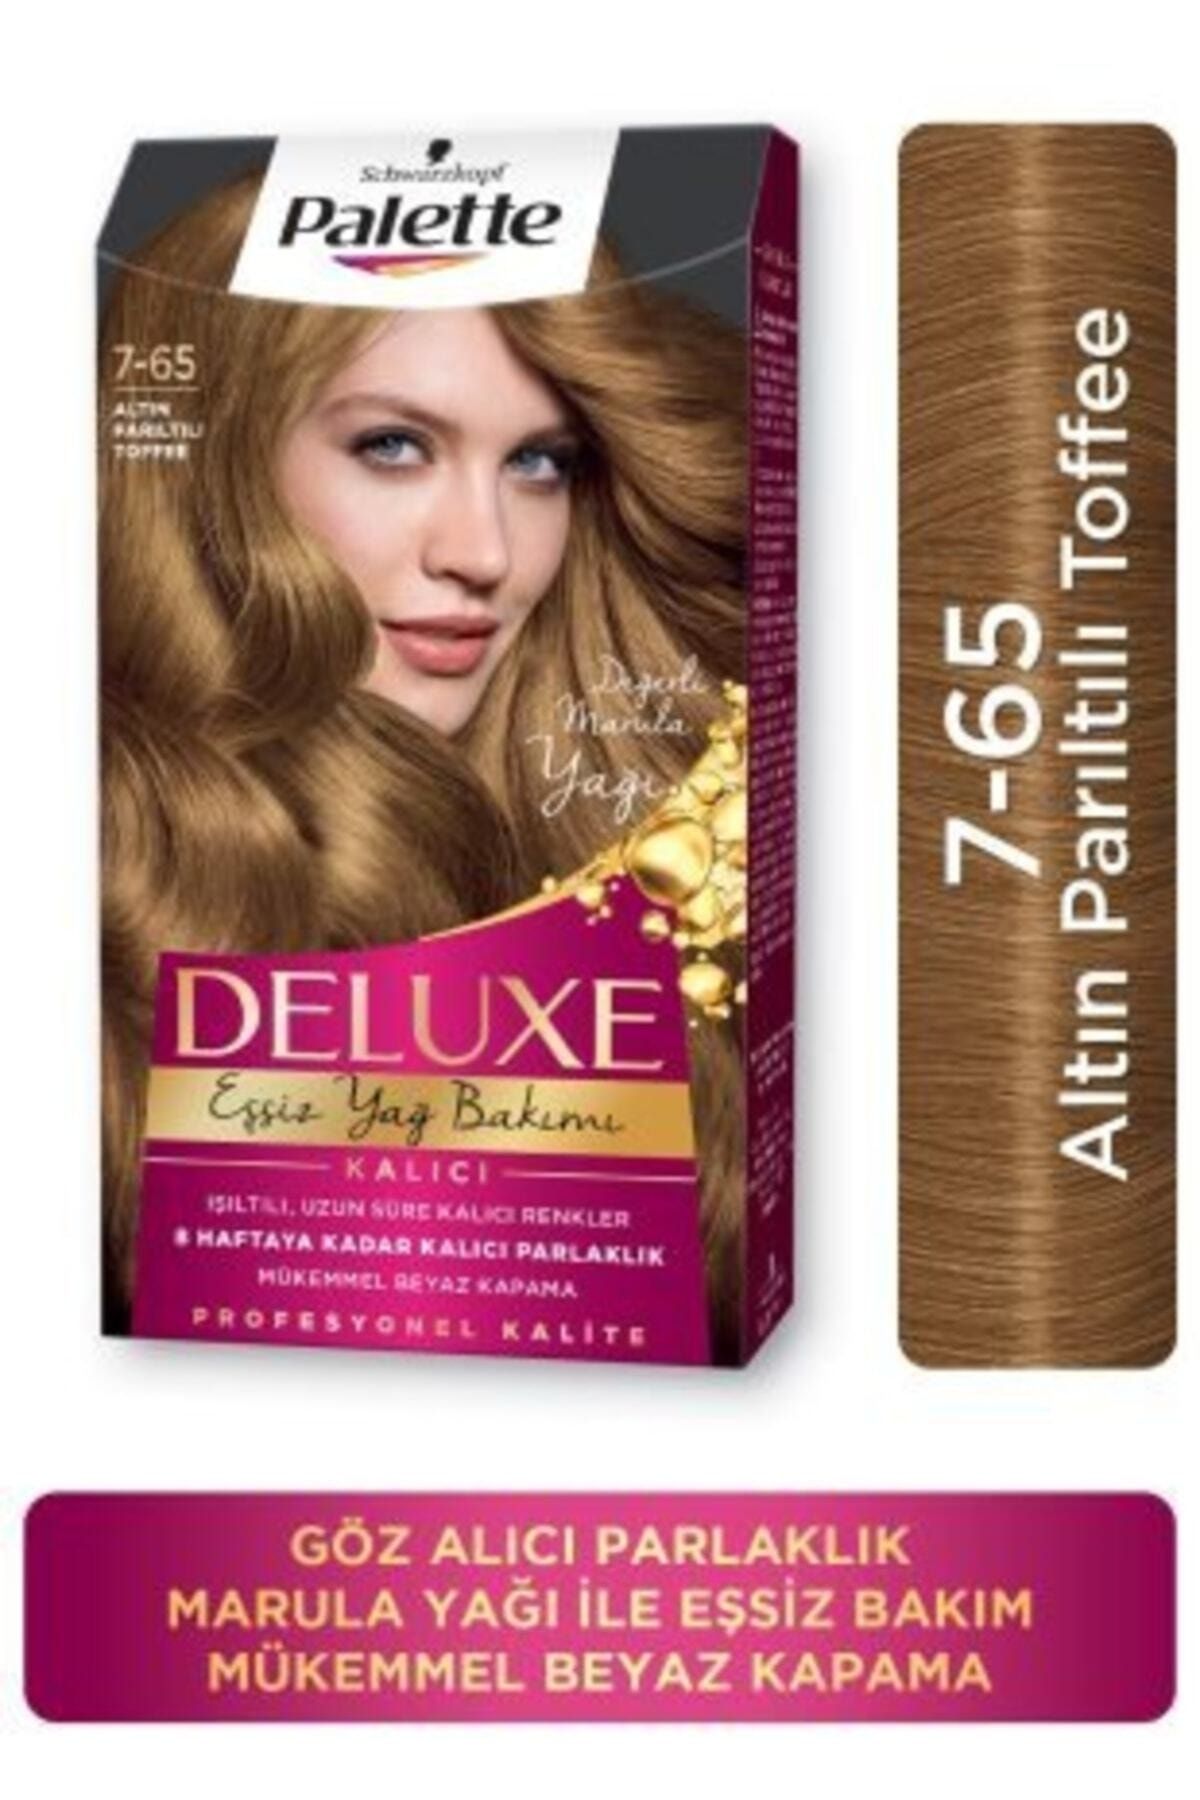 Palette Deluxe Saç Boyası 7-65 Altın Parıltılı Toffee